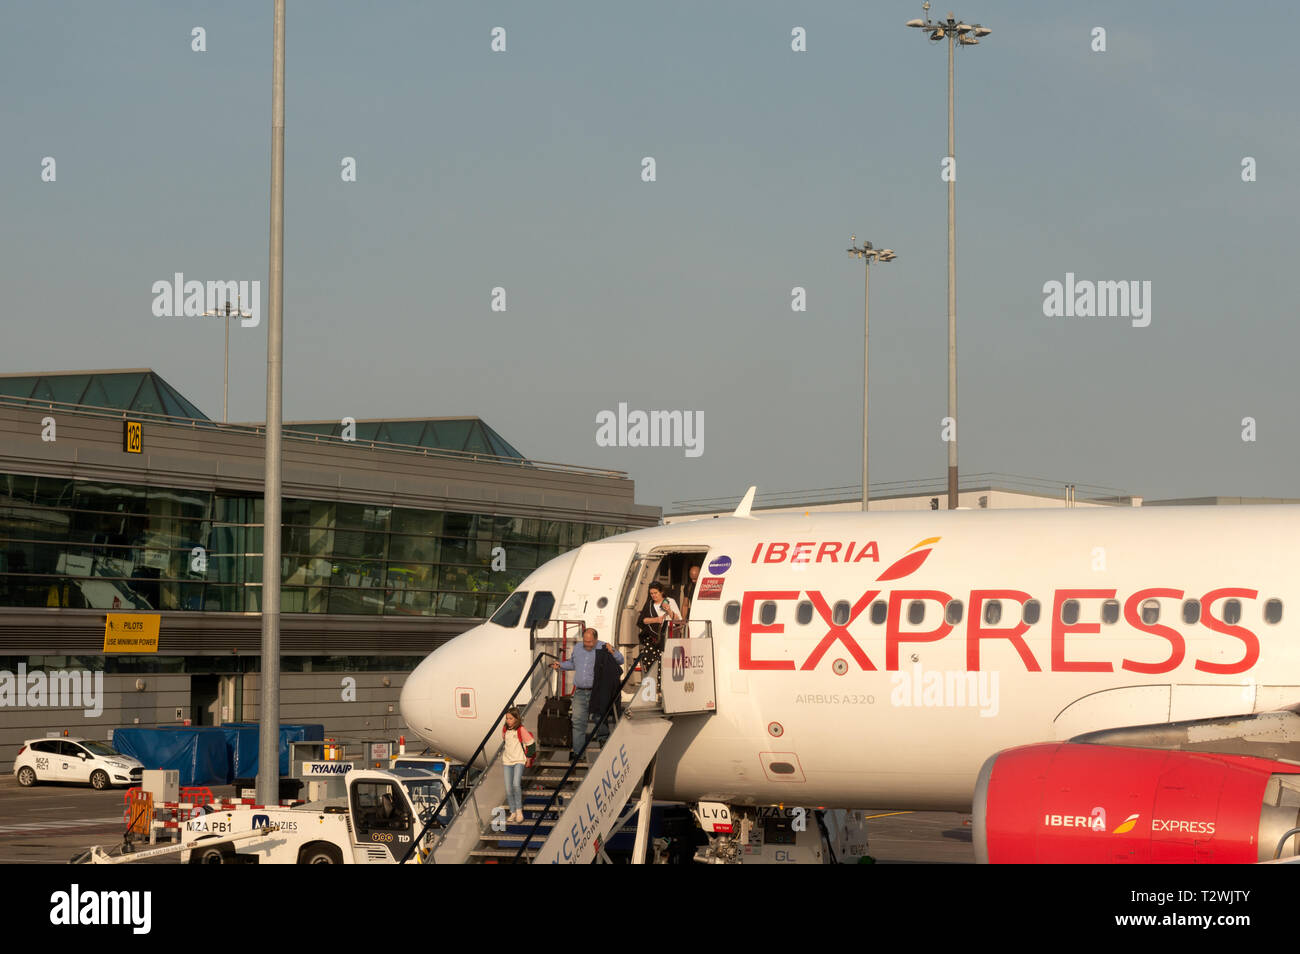 Aéroport de Dublin Iberia Express Airbus A320 avion et passagers Banque D'Images